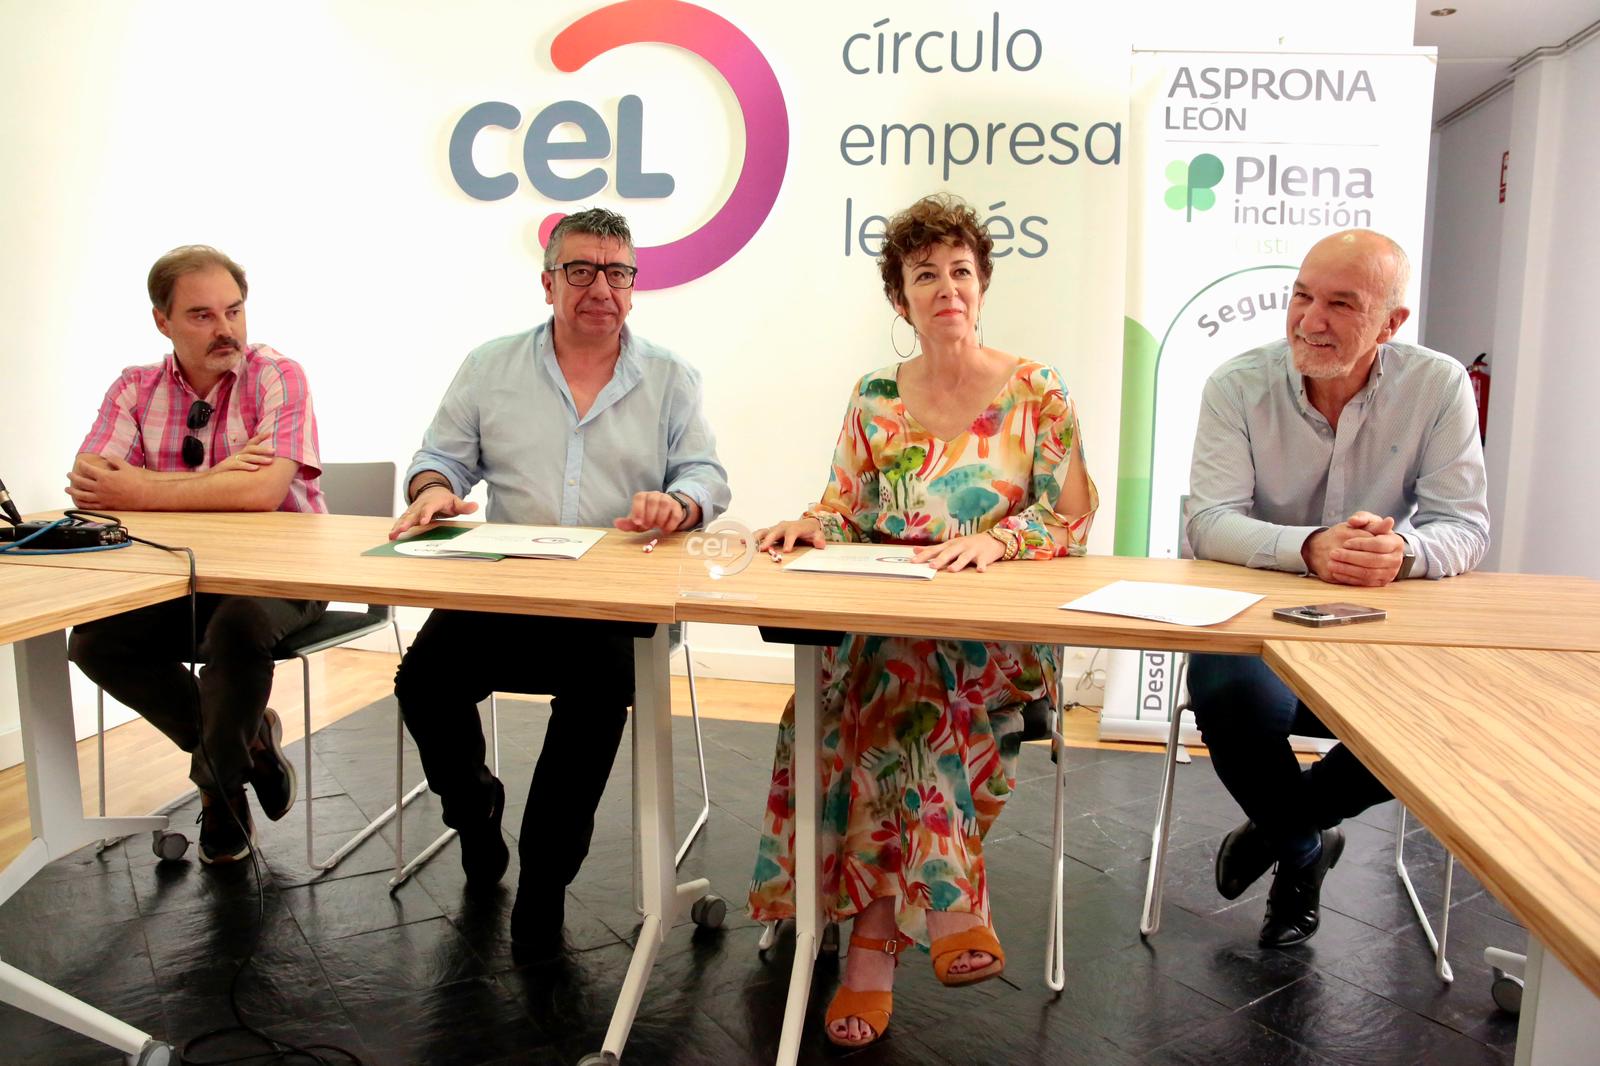 CEL y ASPRONA LEÓN firman un acuerdo para la integración sociolaboral de las personas con discapacidad intelectual